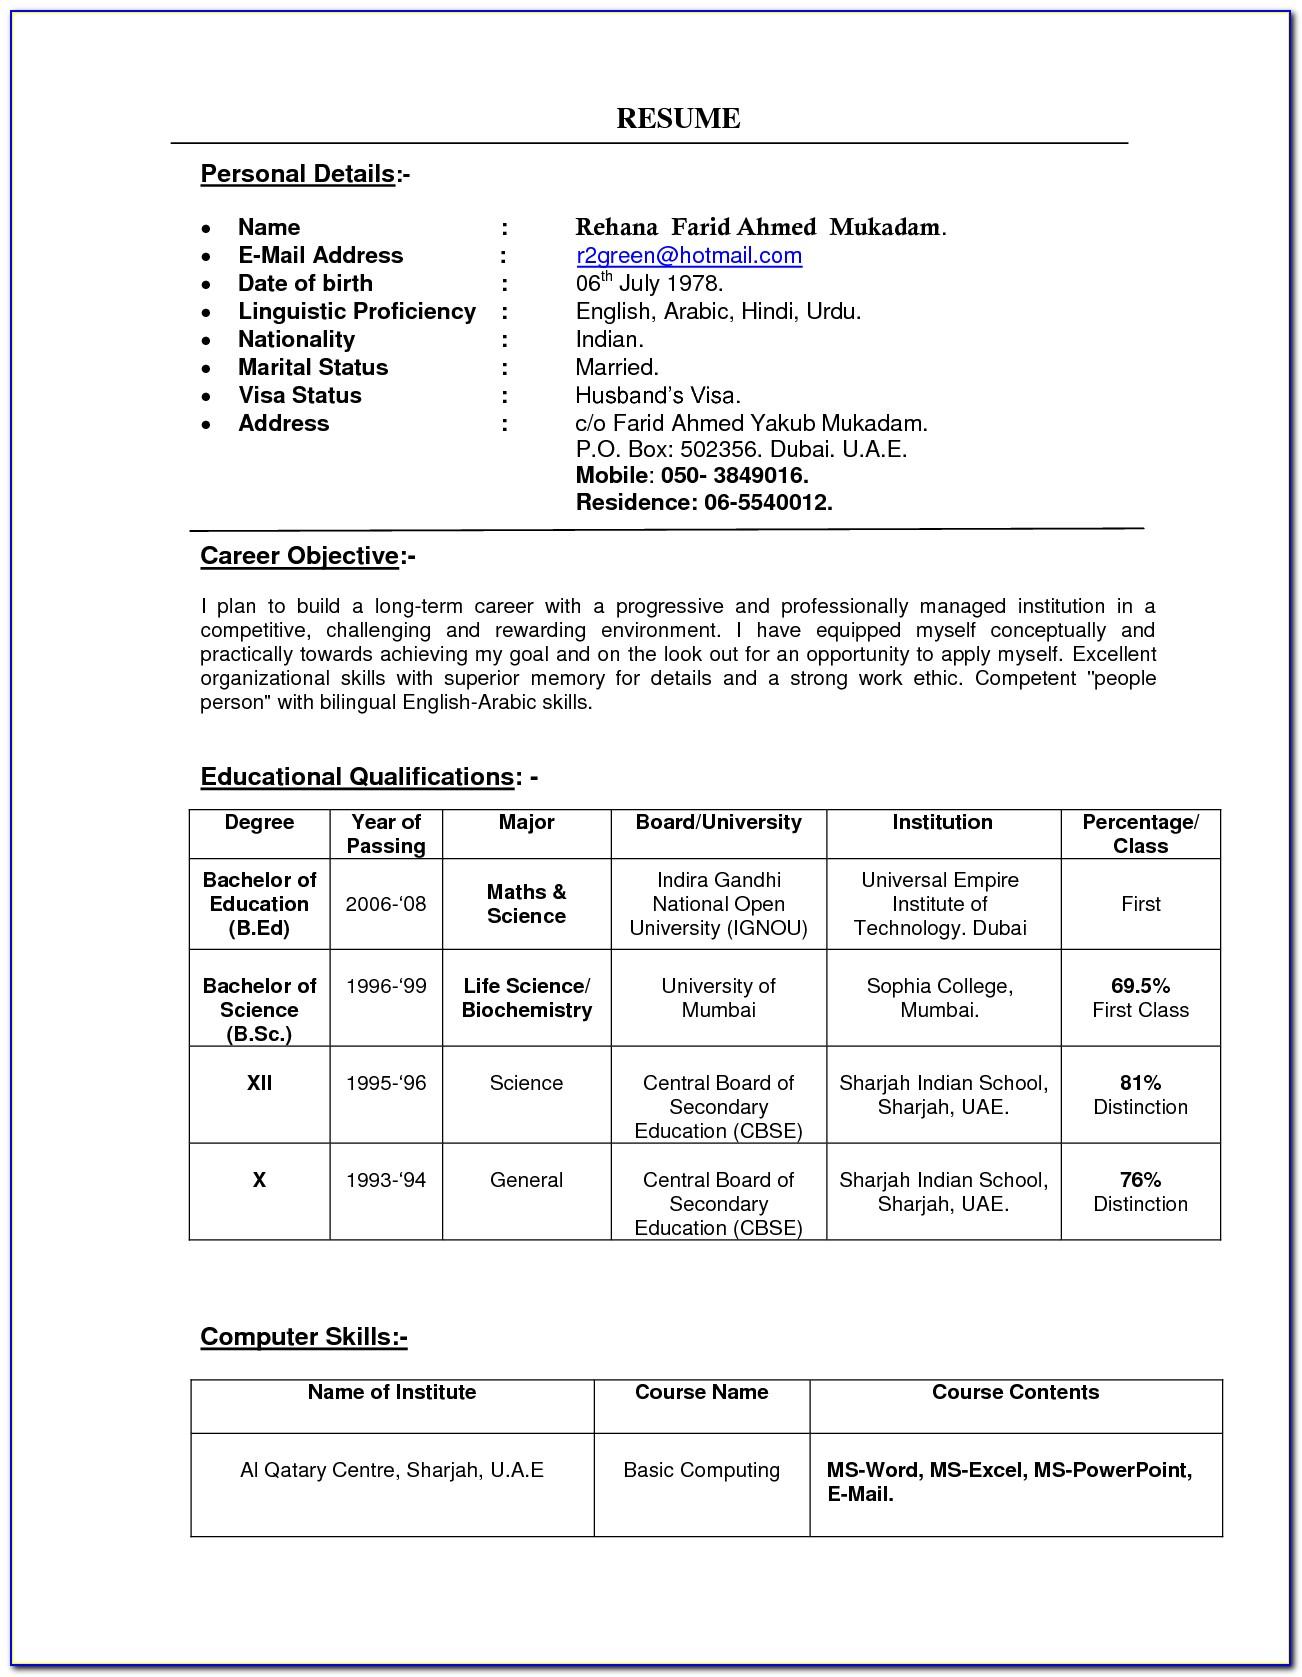 Resume Format For Sales Job Pdf